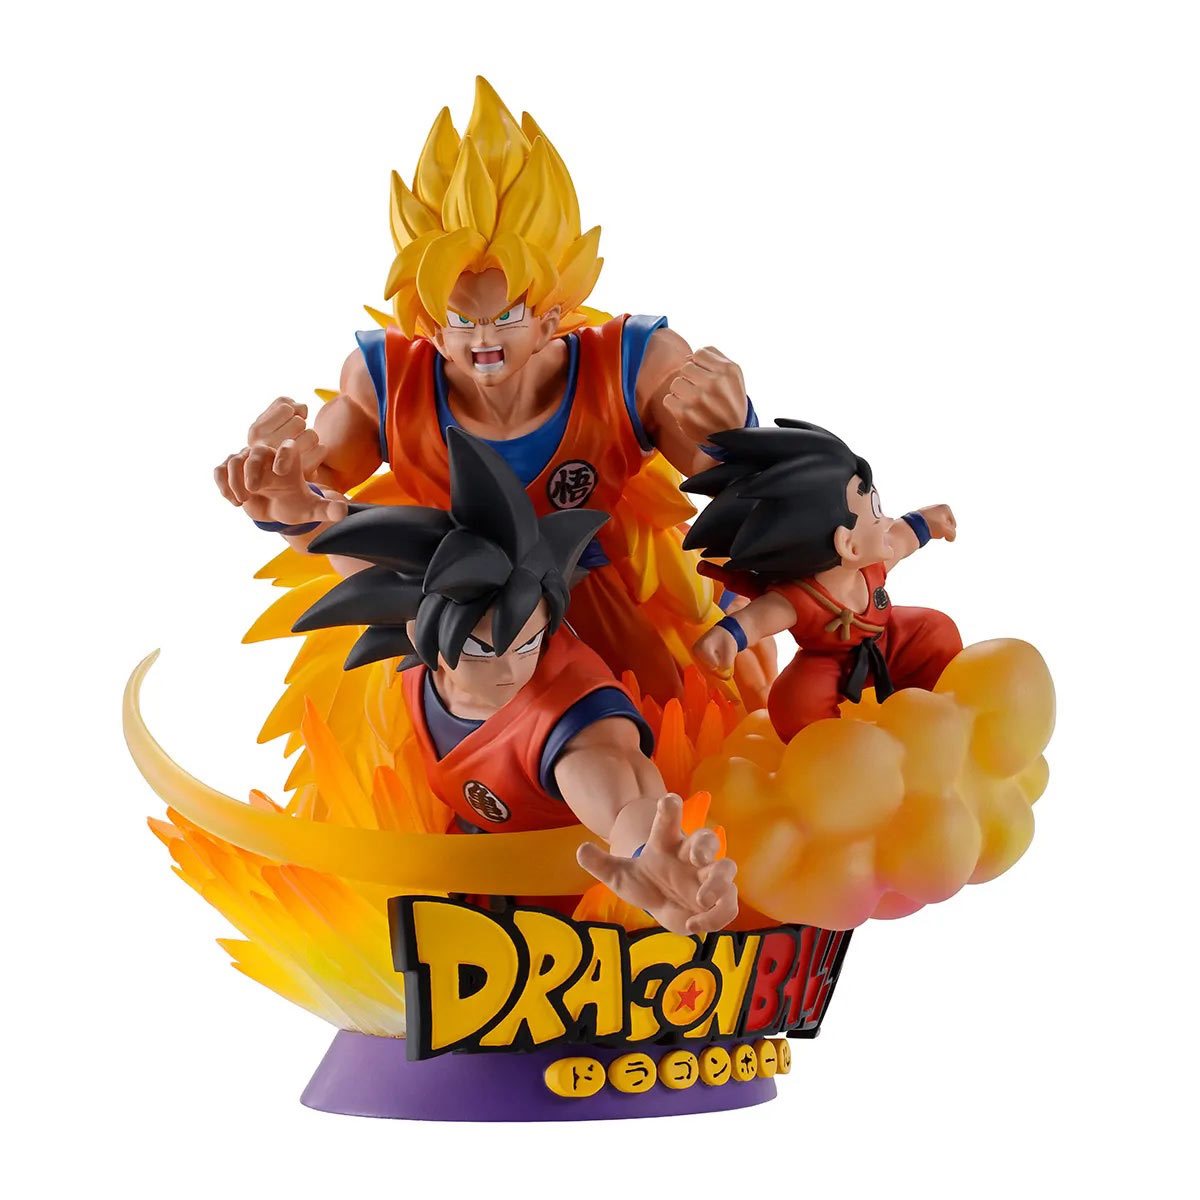 Super Saiyan 5 Goku is Born 